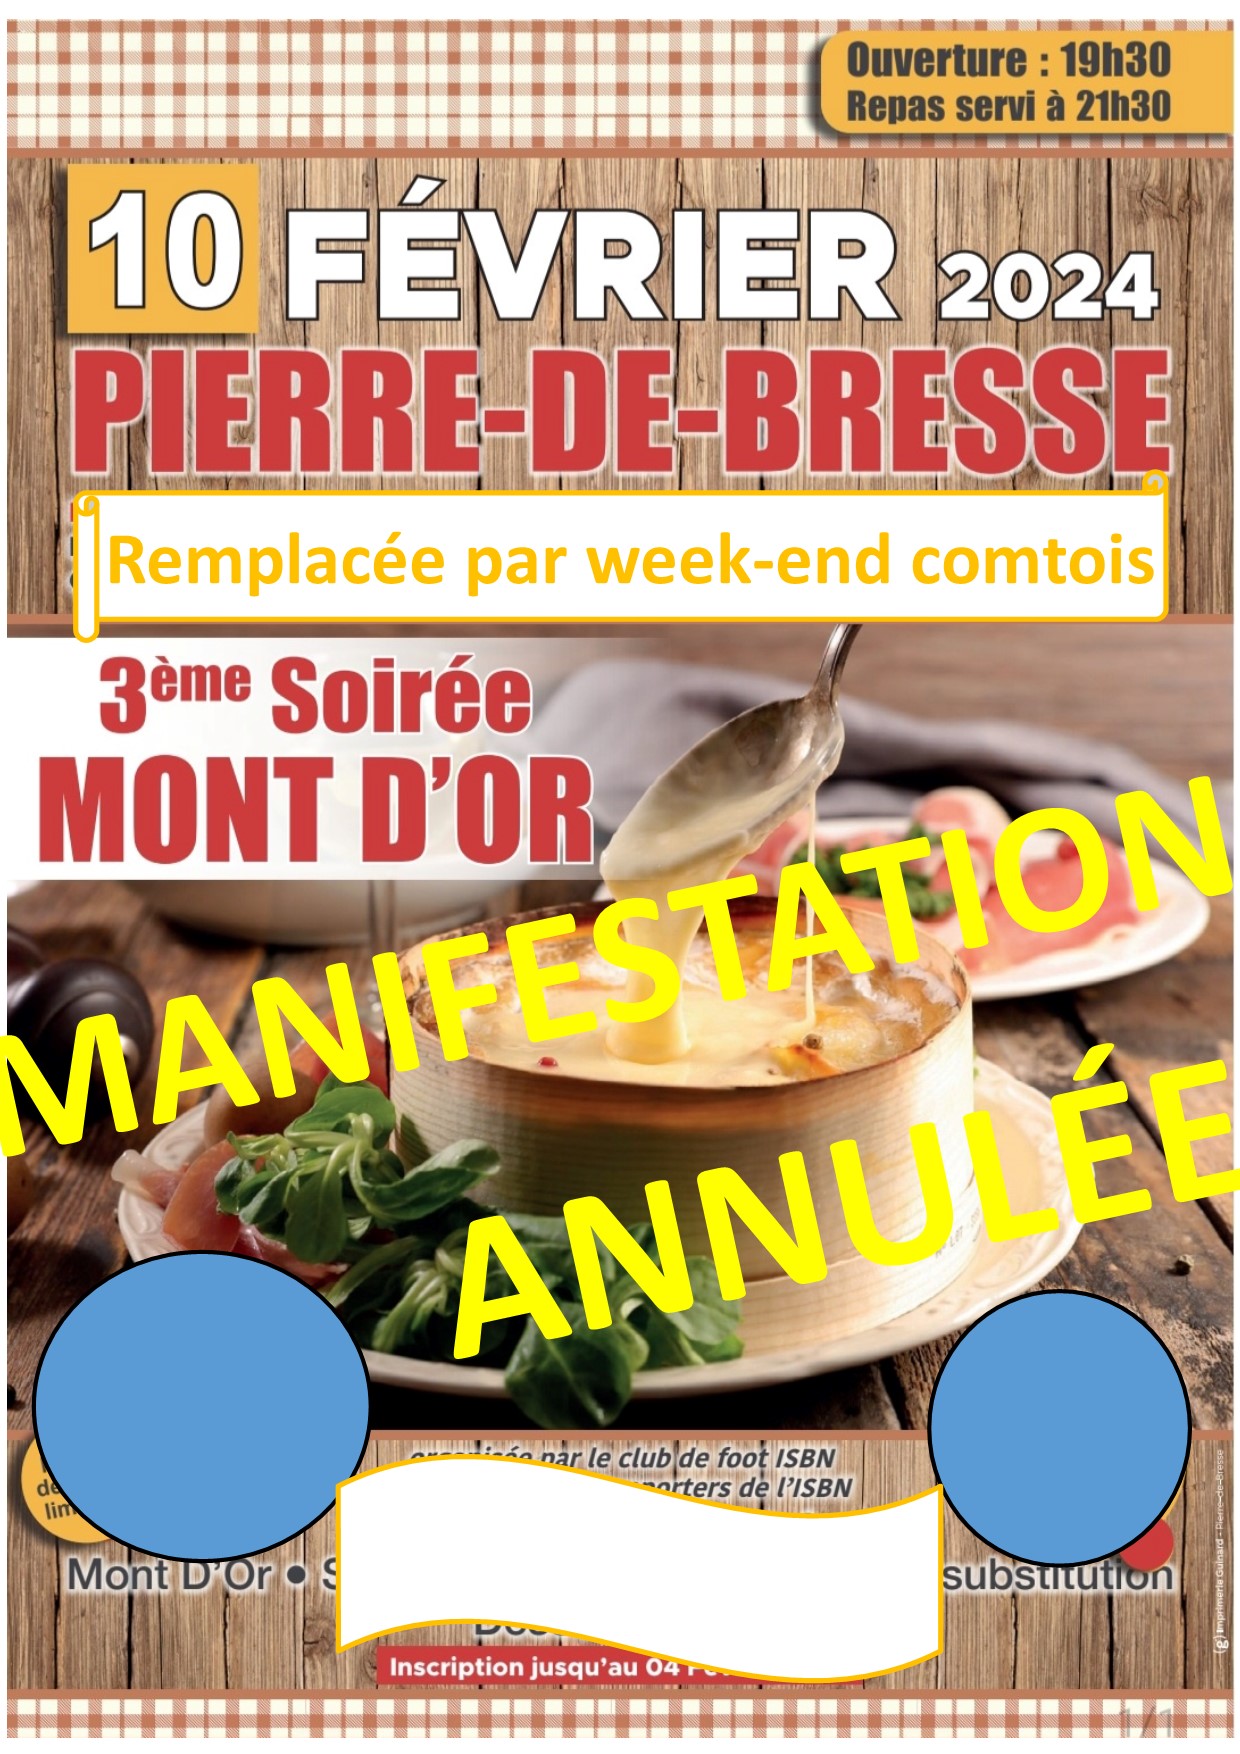 Soirée MONT D'OR ANNULÉE- 10 février 2024